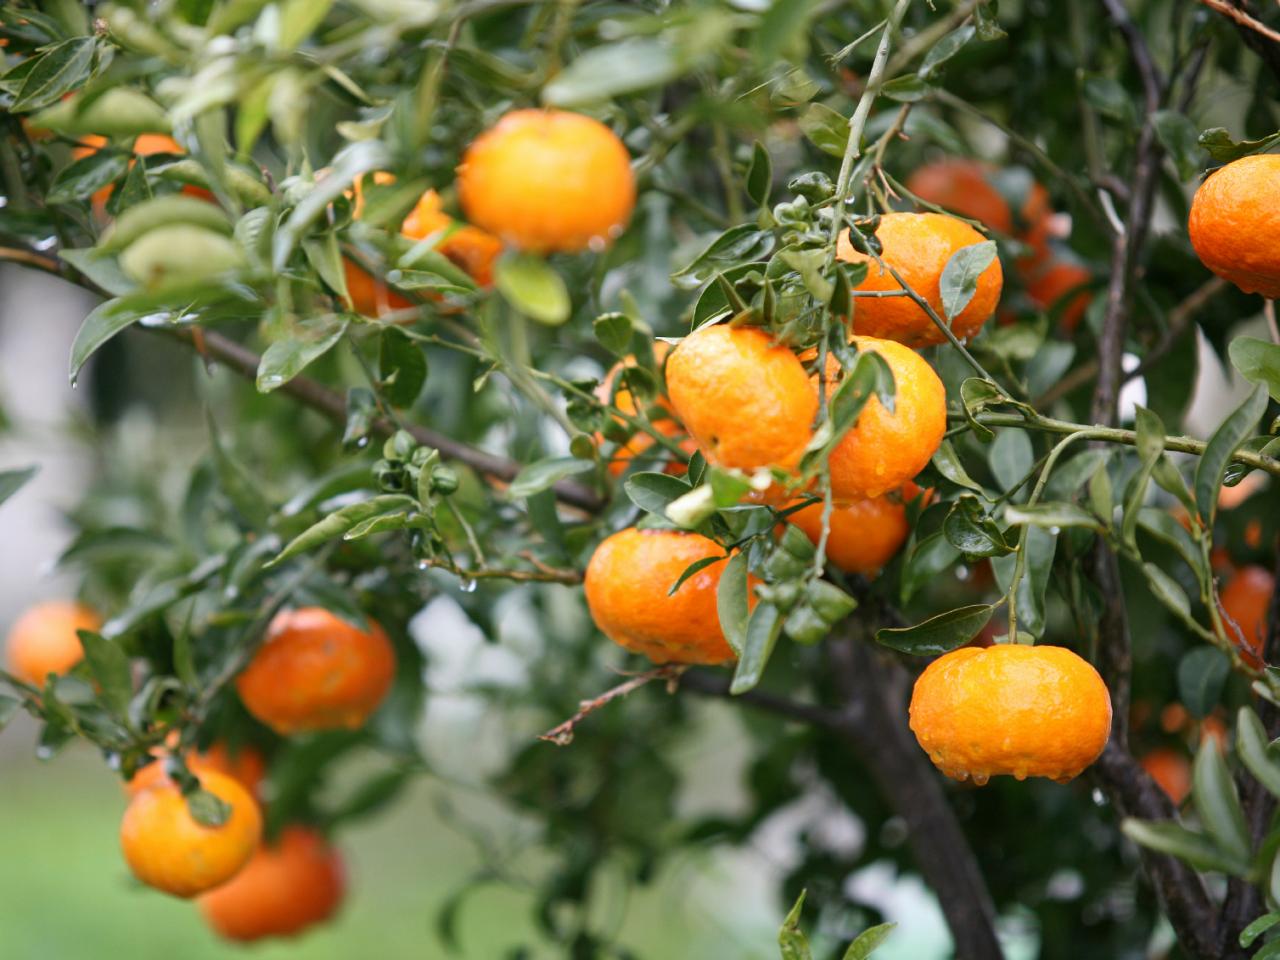 Fertilize citrus trees after fruit sets